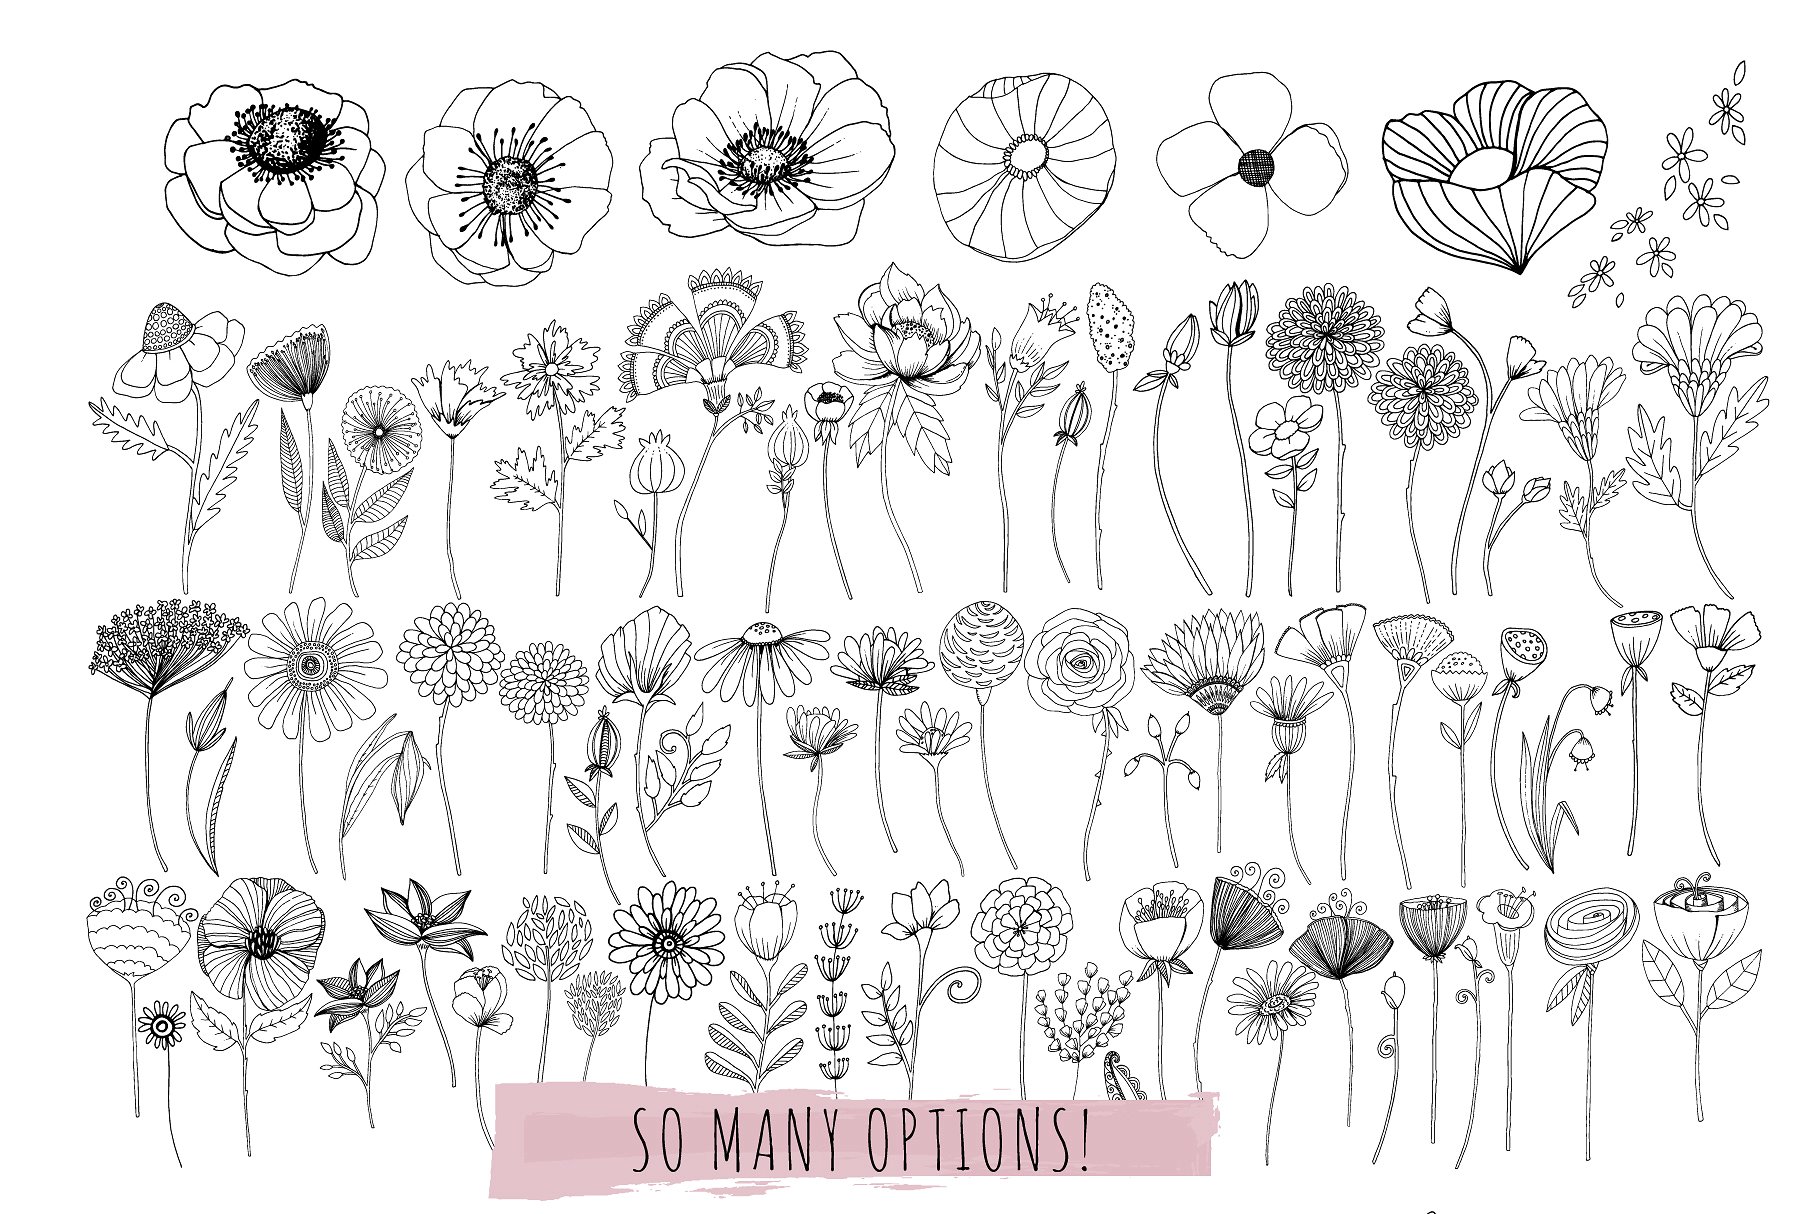 花卉艺术线条及花环素材 Flower Line Art & Floral Wreaths插图(4)